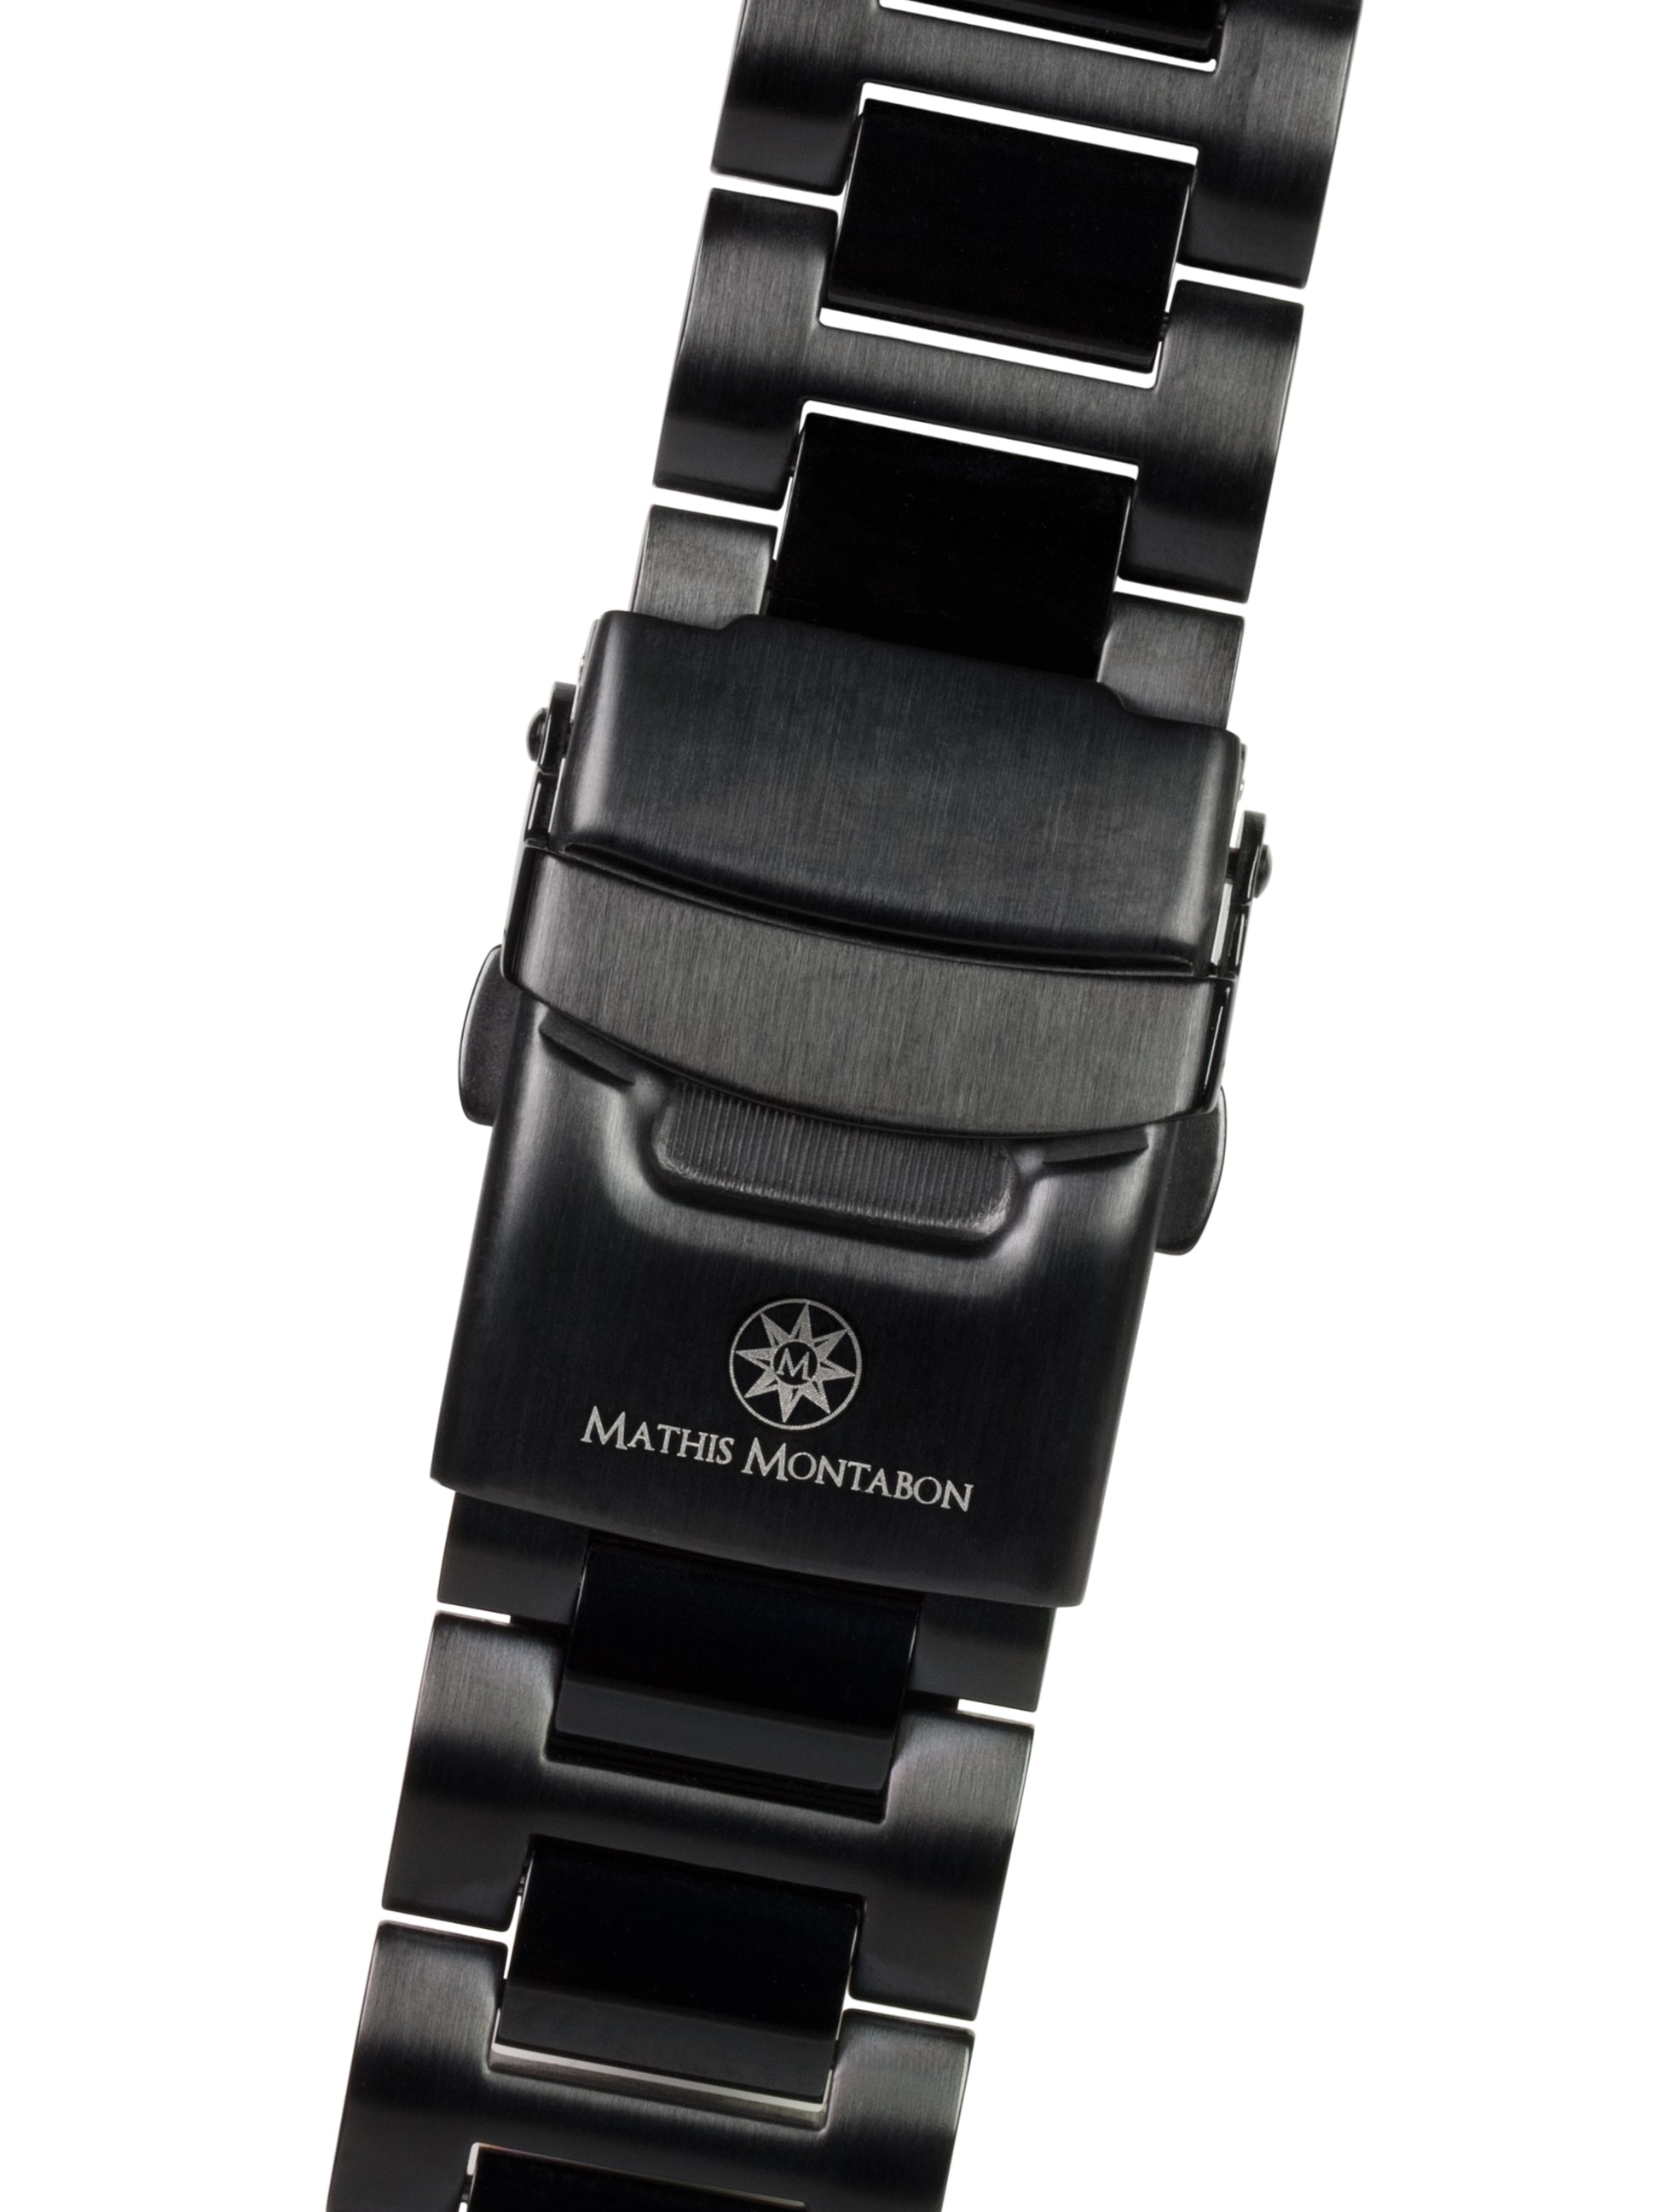 Automatic watches — Pionnier — Mathis Montabon — IP schwarz